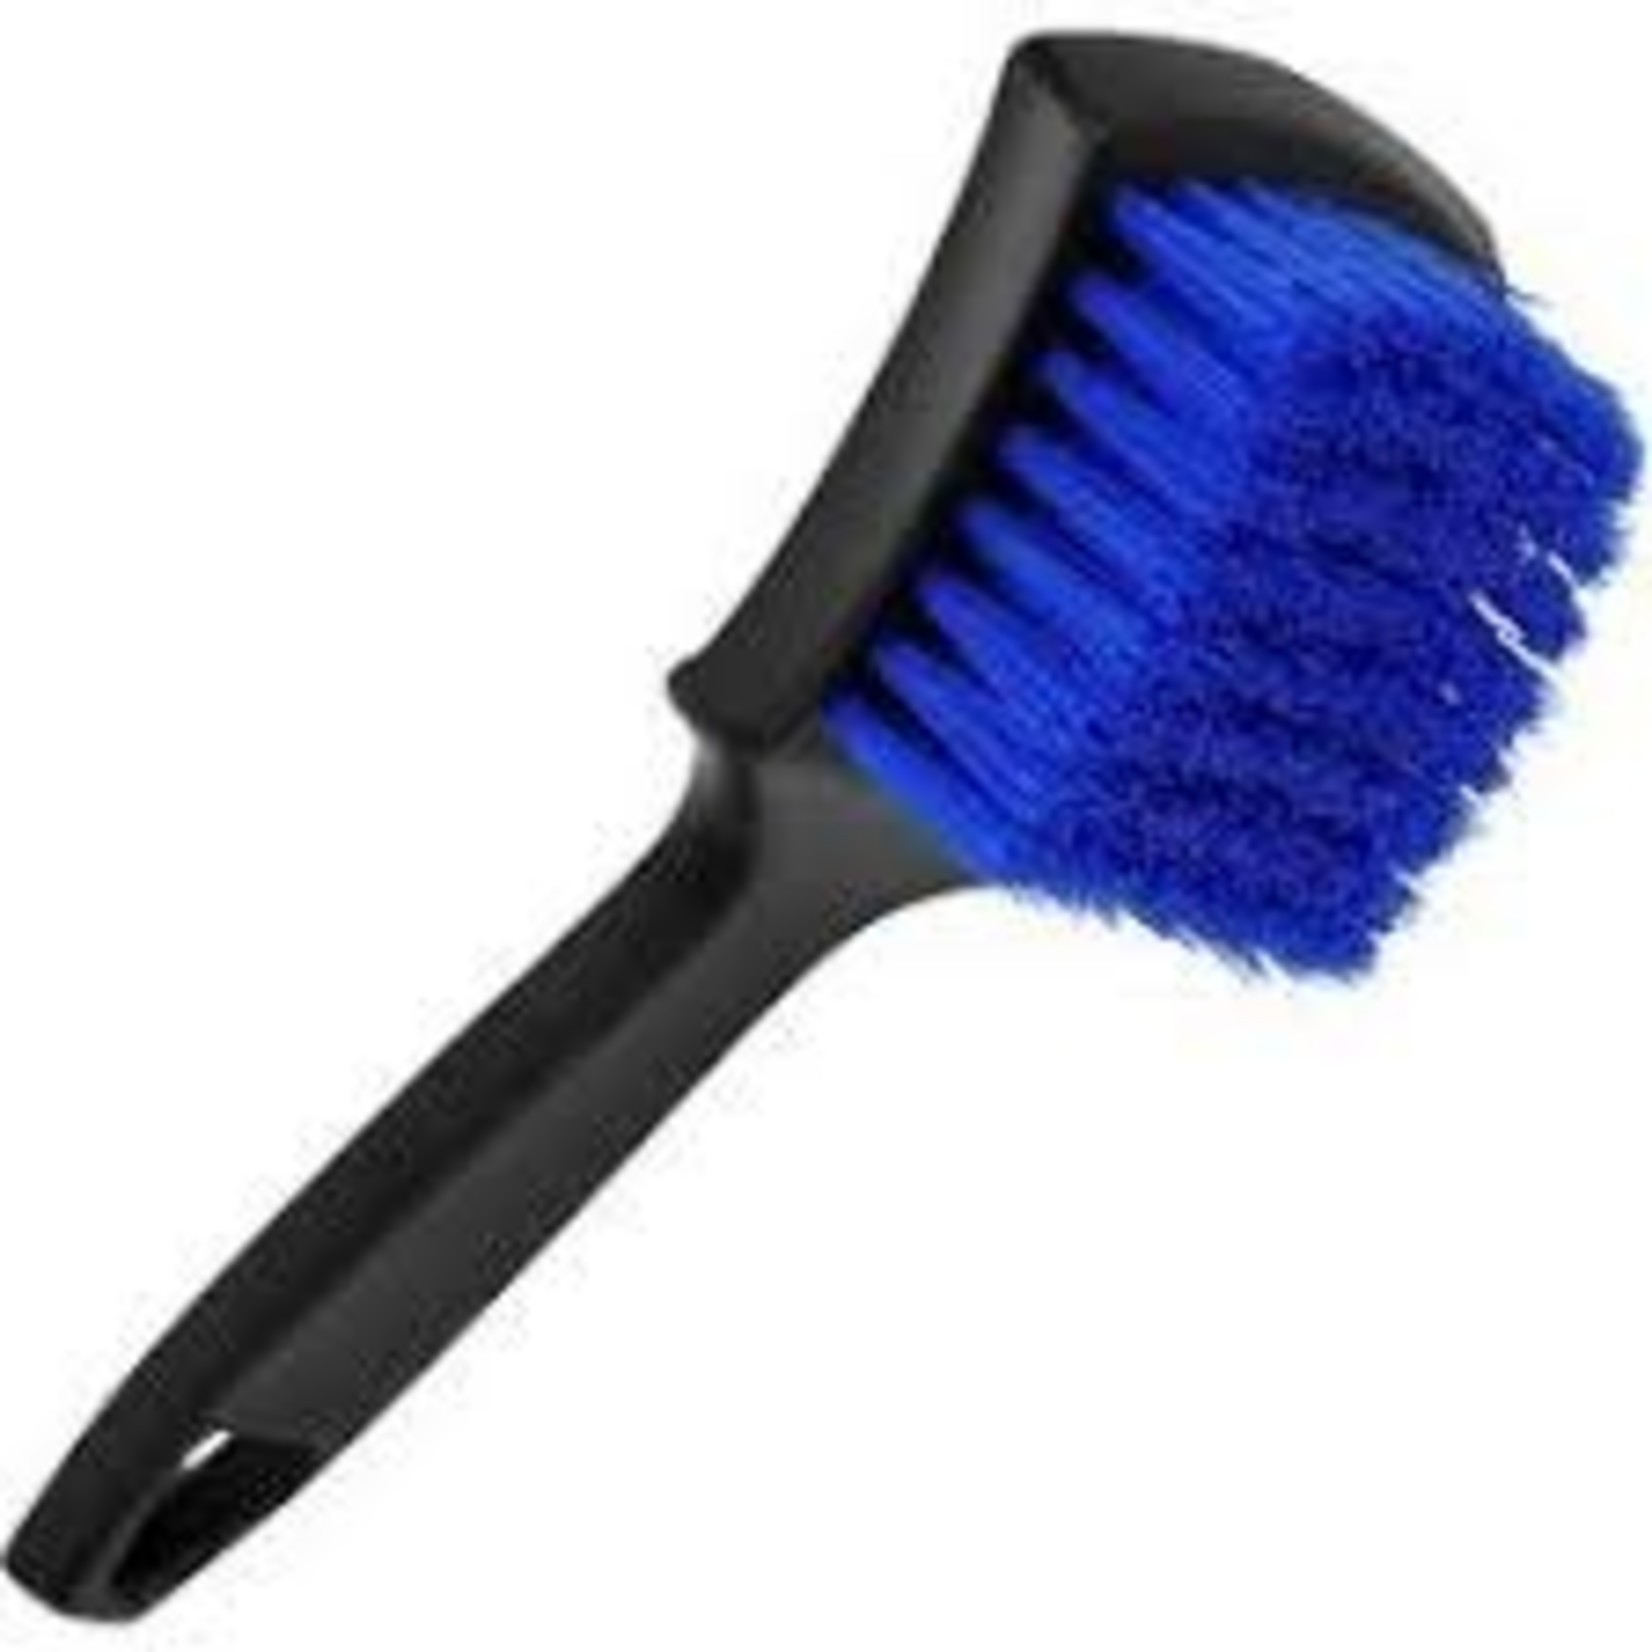 Maxshine - Tire & Carpet Cleaning Brush (Blue)